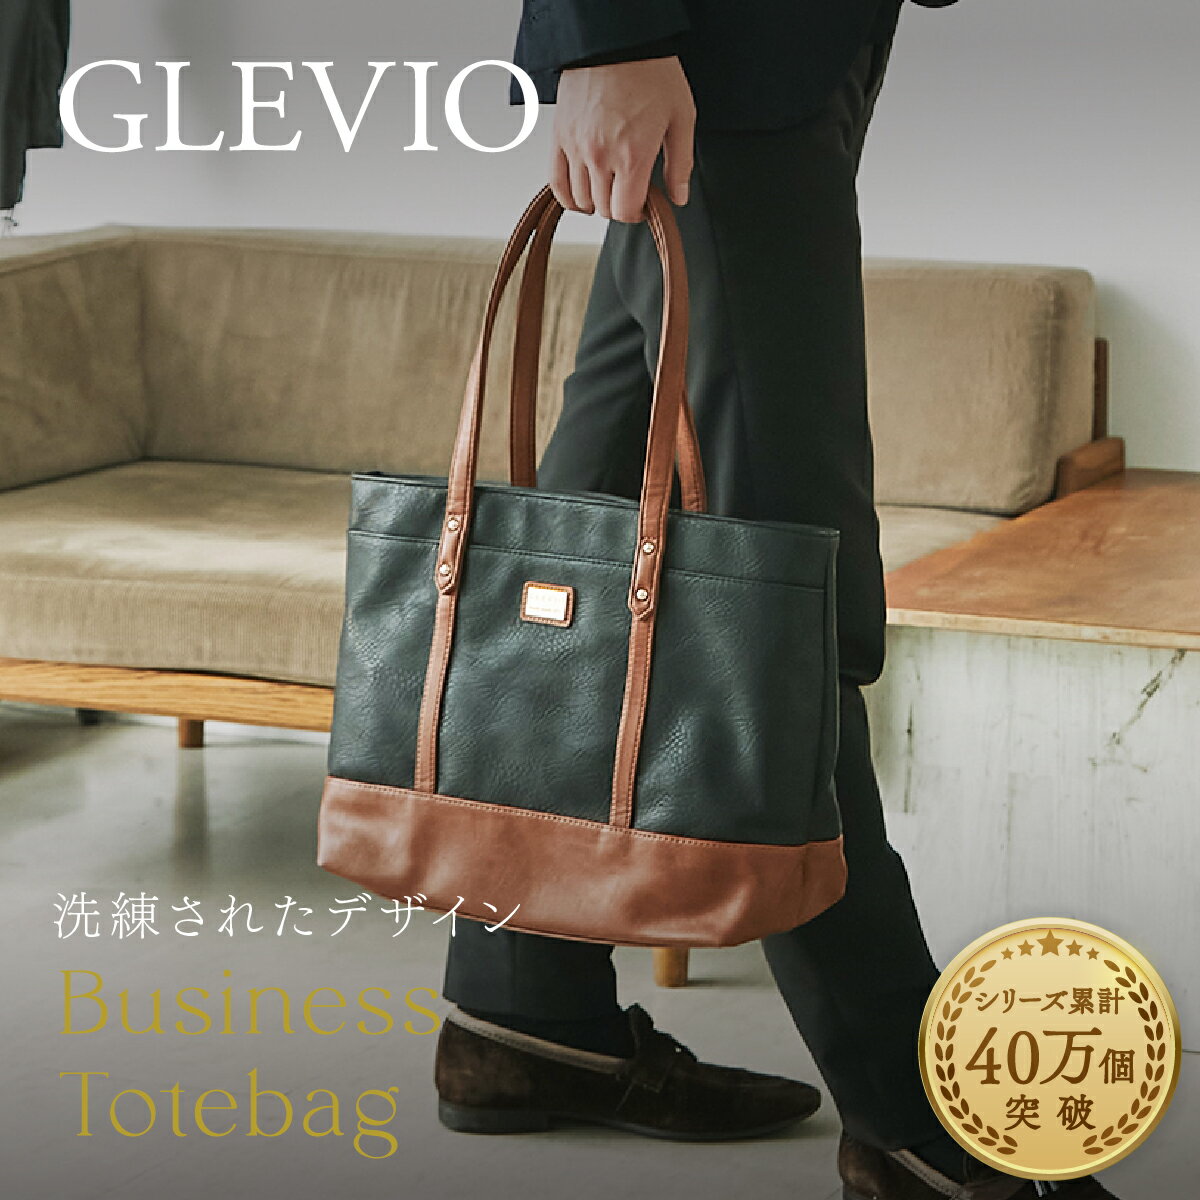 (GLEVIO) 一流の鞄職人が作るビジネストートバッグ｜ビジネス トートバッグ メンズ ビジネスバッグ 縦型 大きめ カジュアル ノートpc 軽い 無地 黒 自立 A4 撥水 軽い 機能性 大容量 軽量 小さめ 旅行 通勤 出張